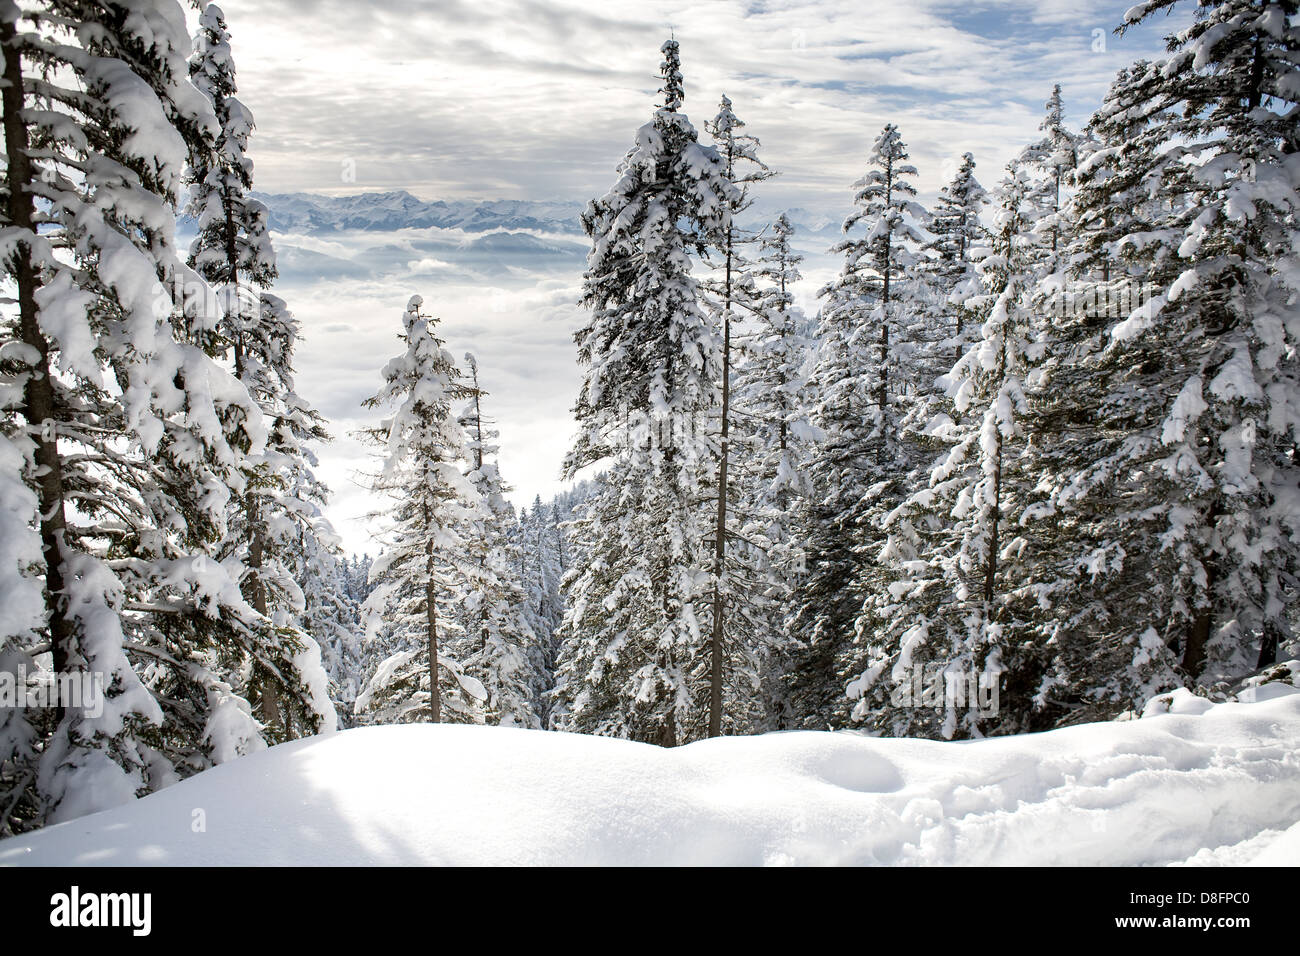 Winter forest in Alps near Kufstein in Austria, Europe. Stock Photo